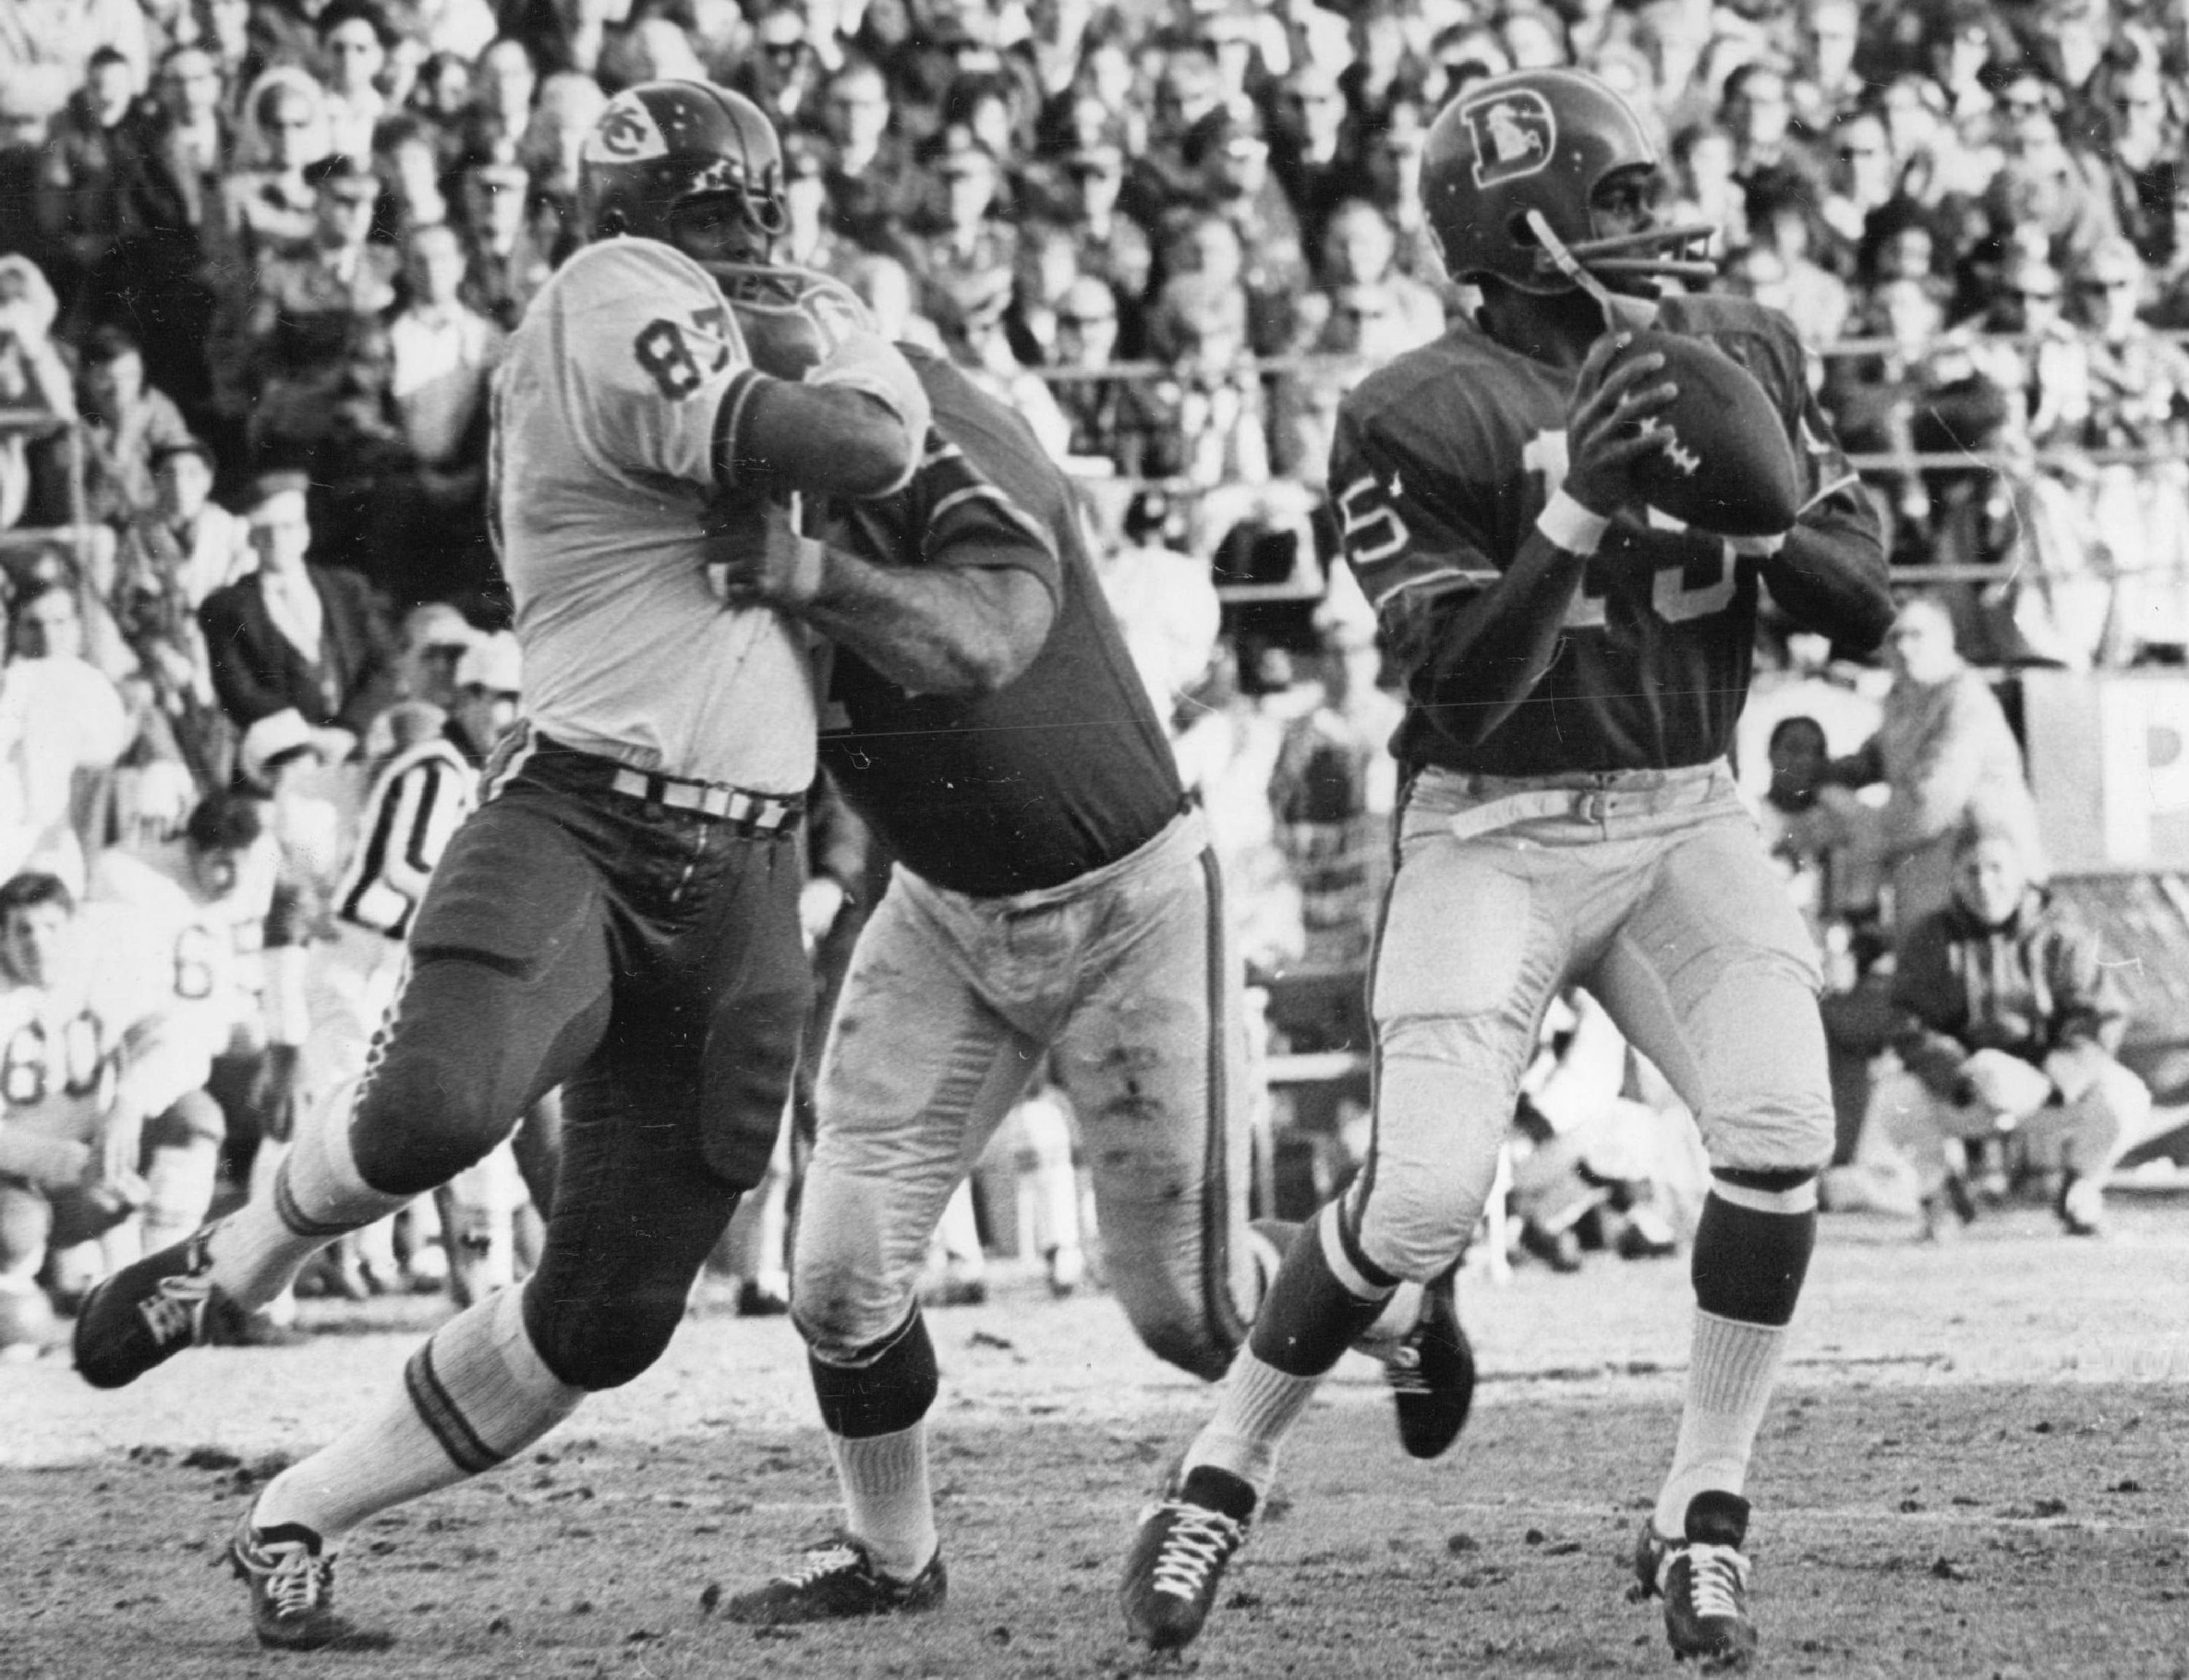 DEC 14 1968, DEC 15 1968; Denver Broncos (Action); Denver quarterback Marlin Briscoe is unaware that